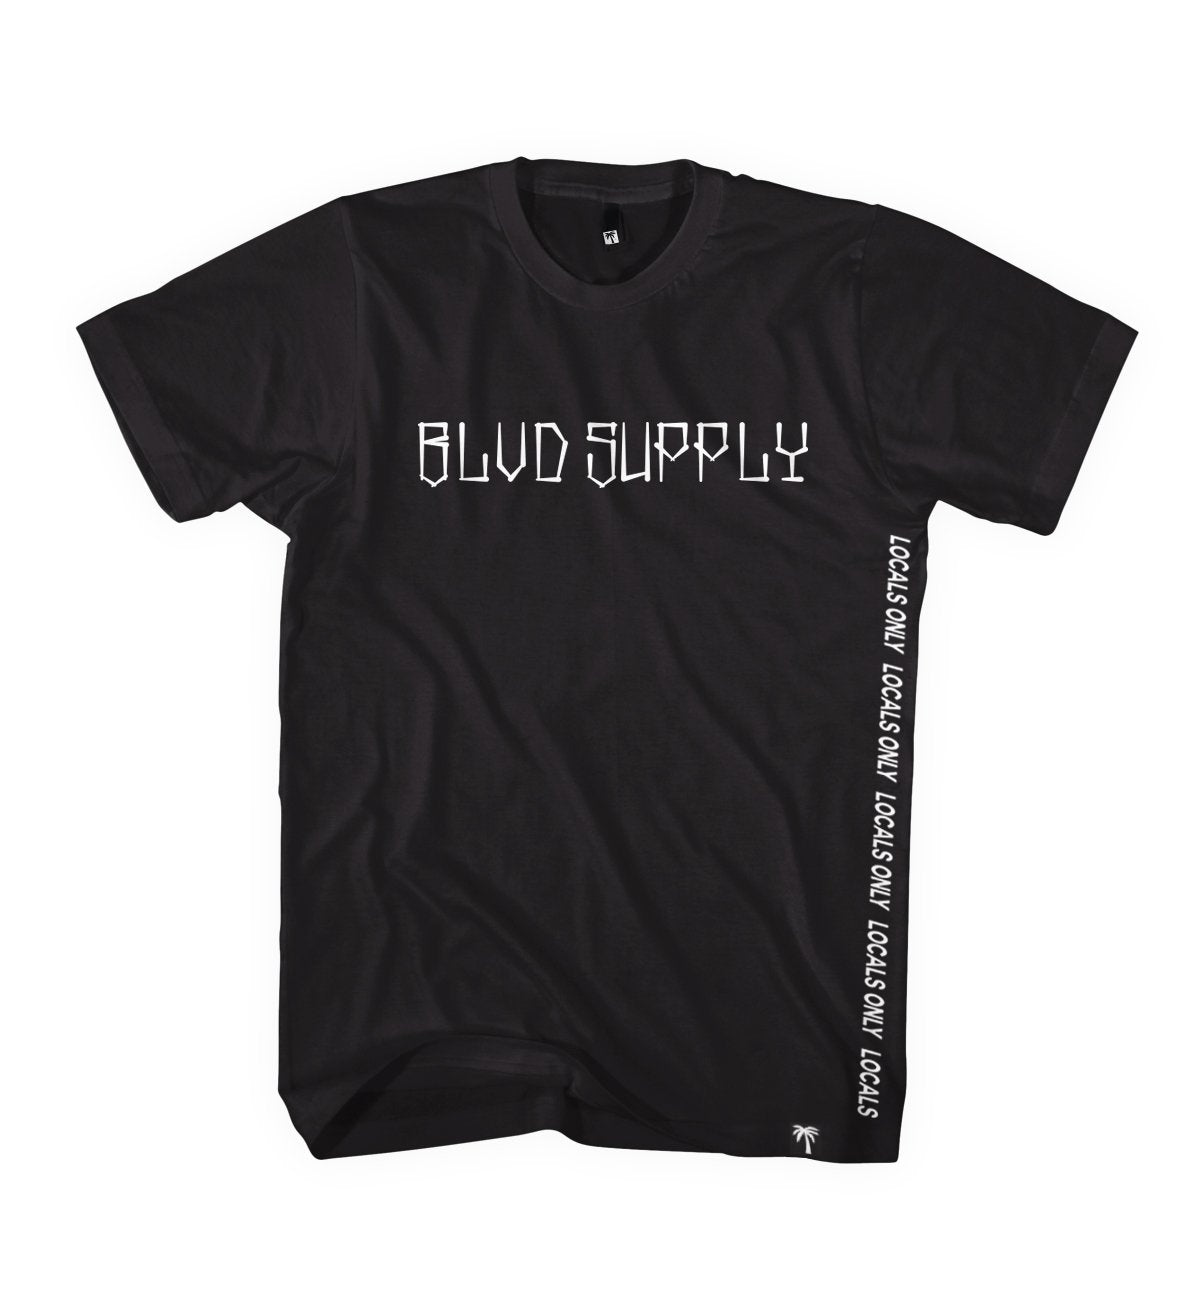 Territory Shirt - BLVD Supply inc